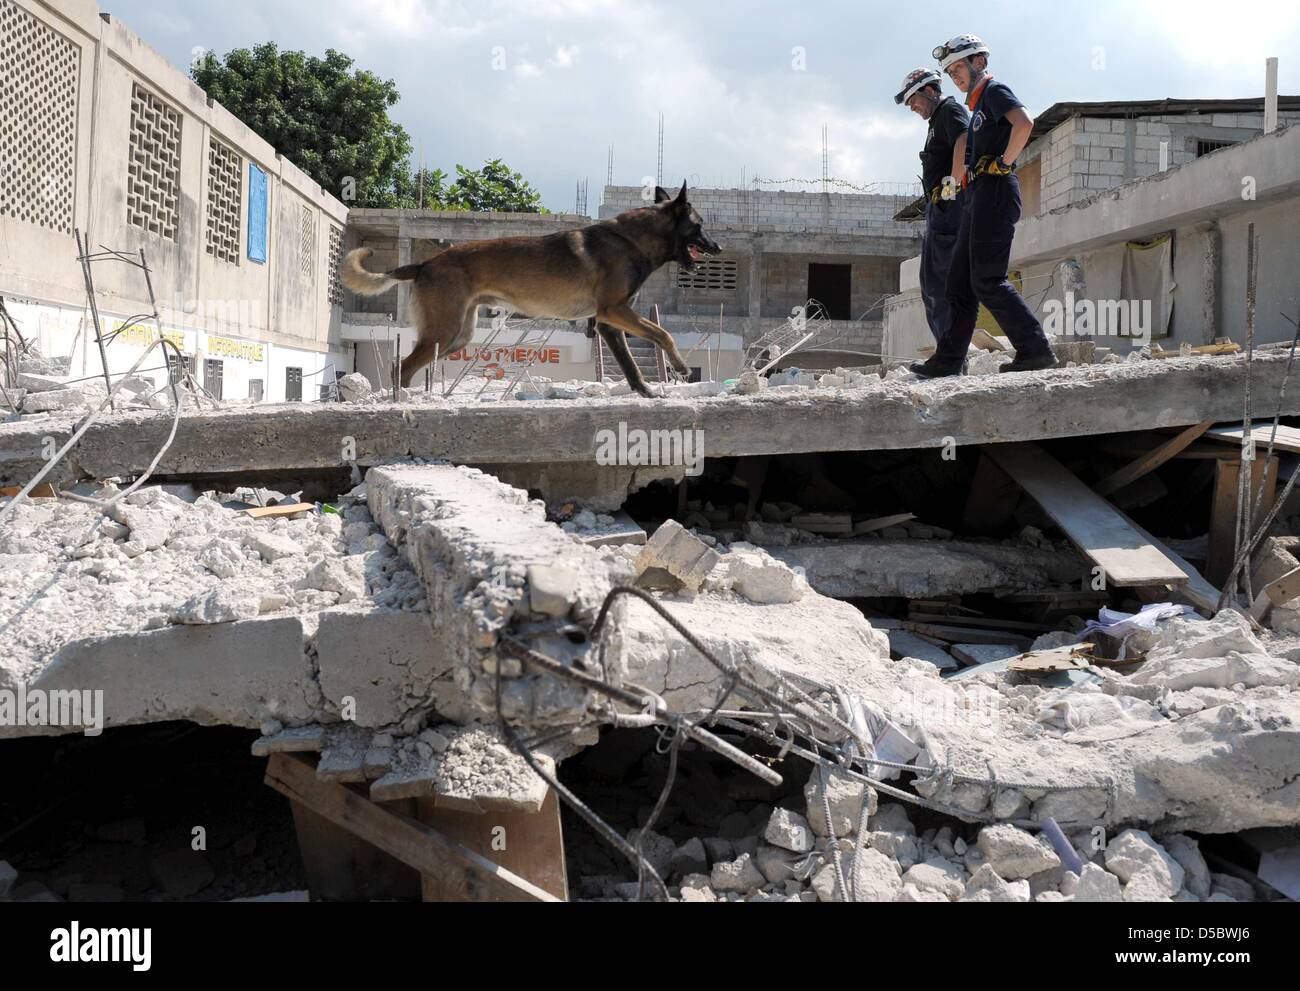 Ein Sniffer-Hund-Team von deutschen Rettungs- und Hilfskräfte Organisation katastrophenerschütterte (International Search and Rescue) sucht nach Überlebenden des Erdbebens am Dienstag in den Ruinen von Port-au-Prince, Haiti, 17 Januar 2010. Es wird befürchtet, dass die Erdbeben der Stärke 7 zwischen 50.000 und 100.000 Menschen getötet. Helfer, die Ankunft in Port-au-Prince wurden mit Chaos, Zerstörung, Pfähle o konfrontiert Stockfoto